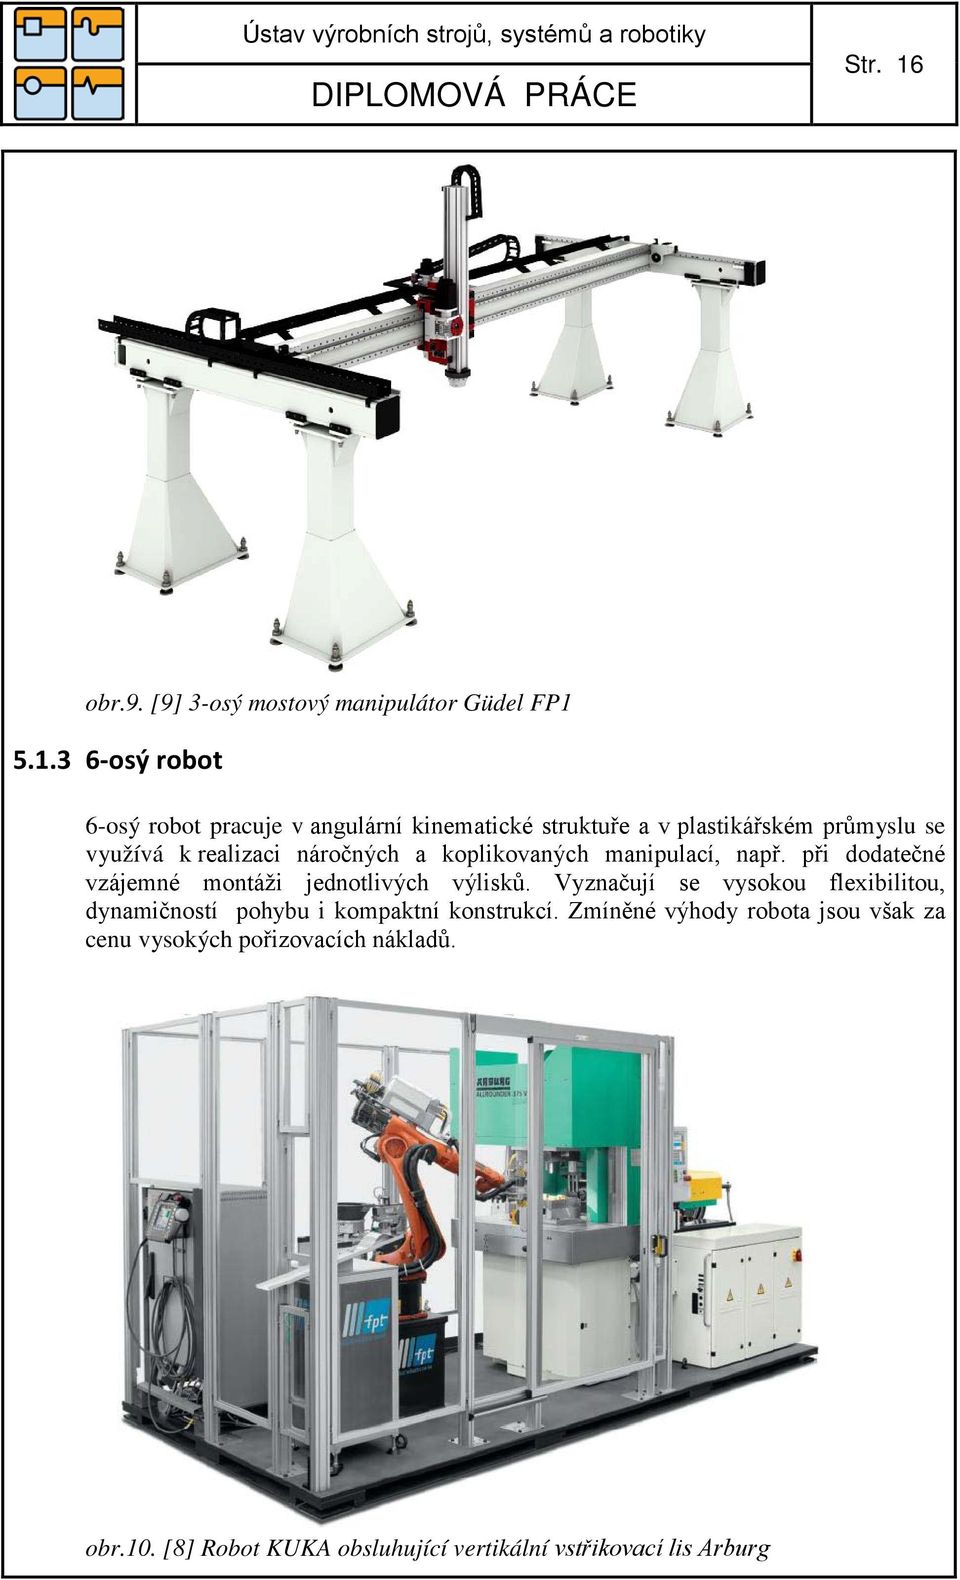 5.1.3 6-osý robot 6-osý robot pracuje v angulární kinematické struktuře a v plastikářském průmyslu se využívá k realizaci